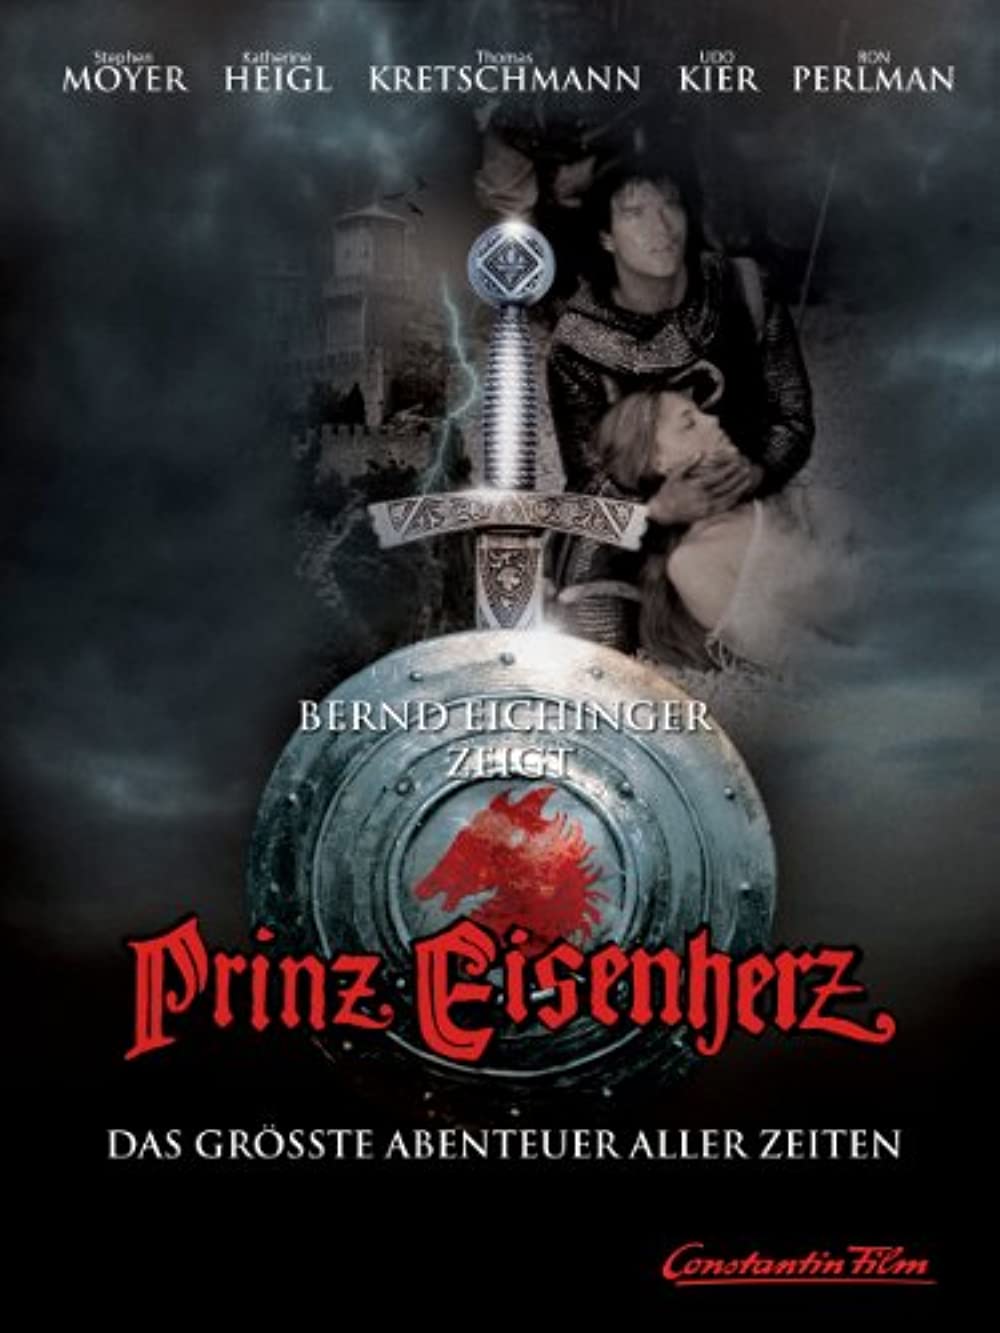 Filmbeschreibung zu Prinz Eisenherz